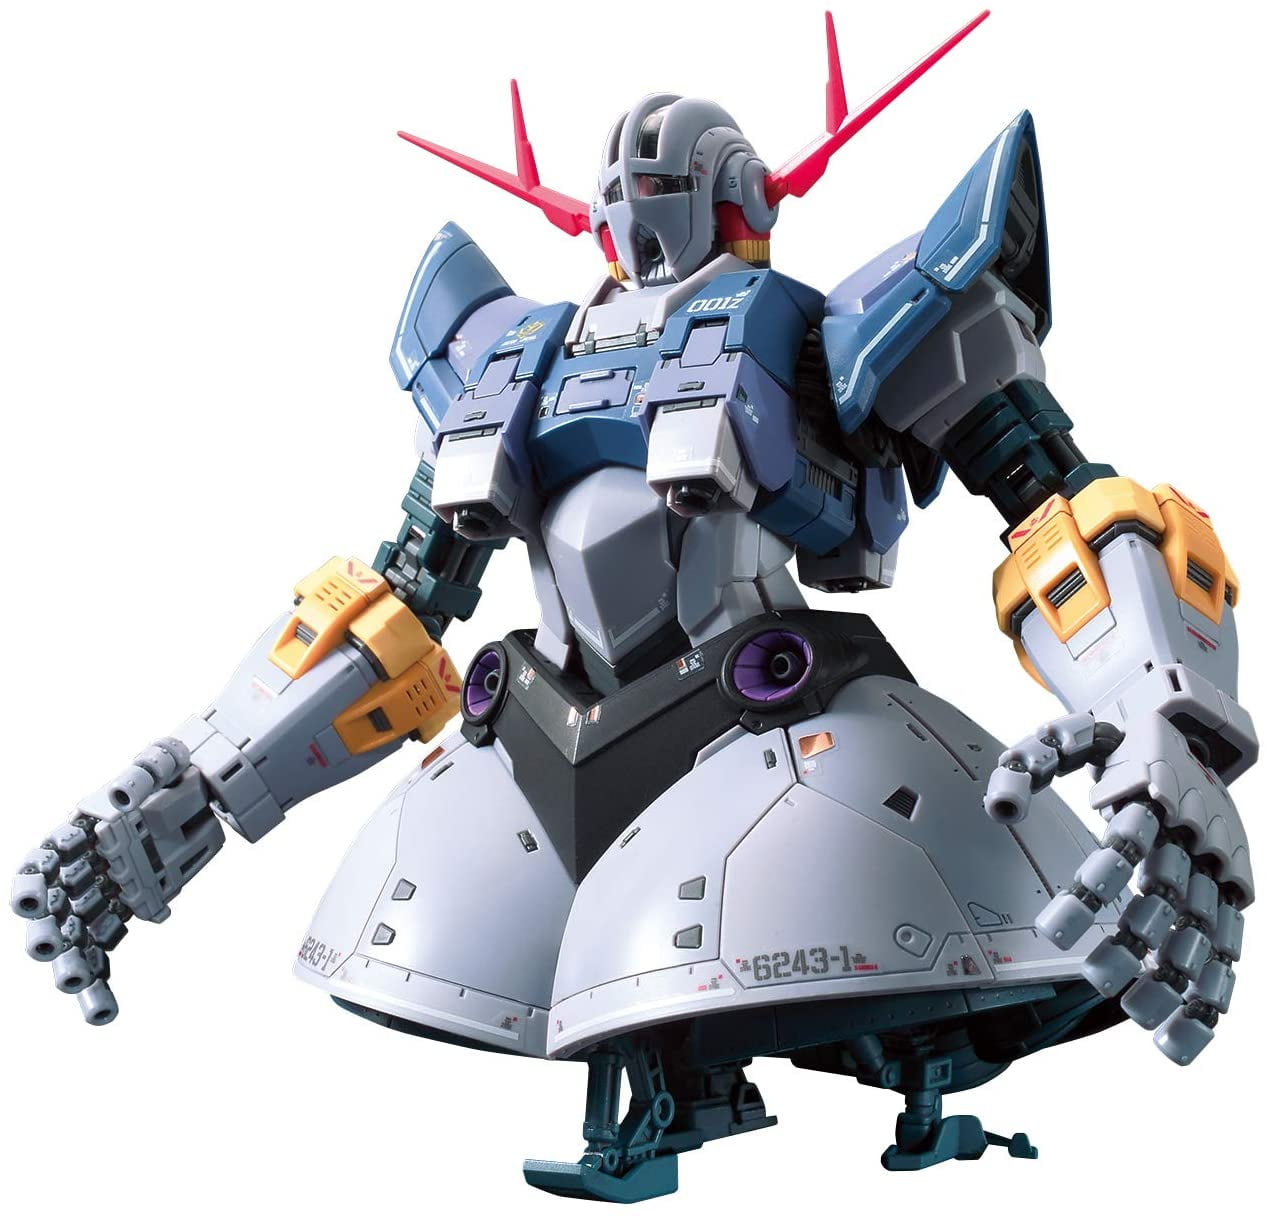 Bandai 2521850 1:144 Gundam Zeong Model Kit for sale online 